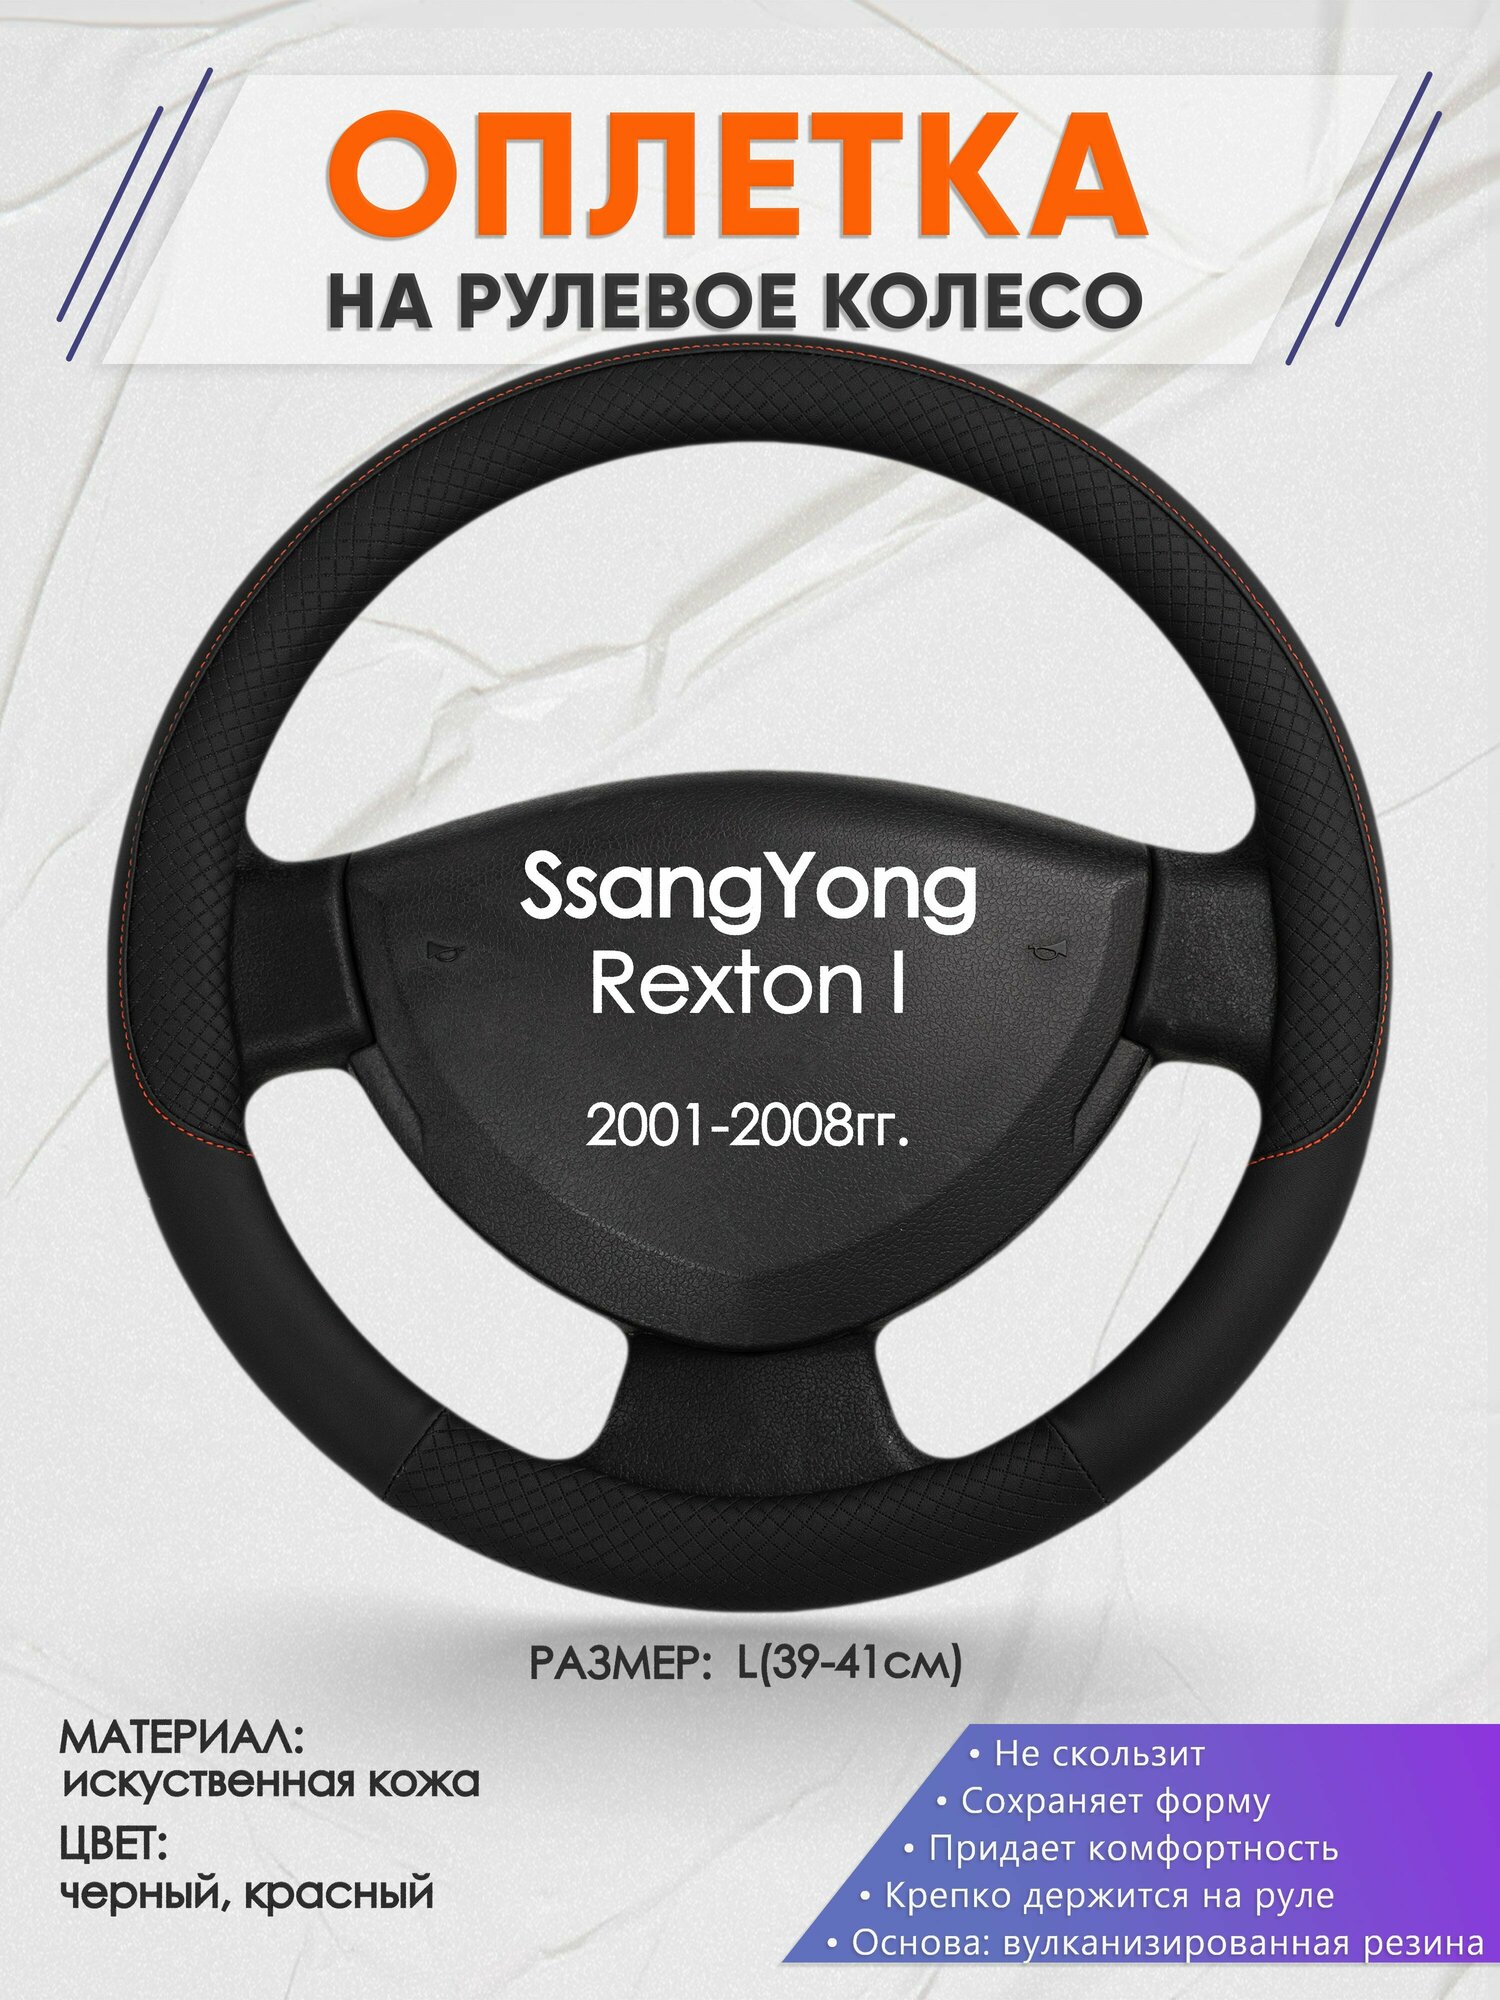 Оплетка на руль для SsangYong Rexton I(Санг Енг Рекстон 1) 2001-2008, L(39-41см), Искусственная кожа 18